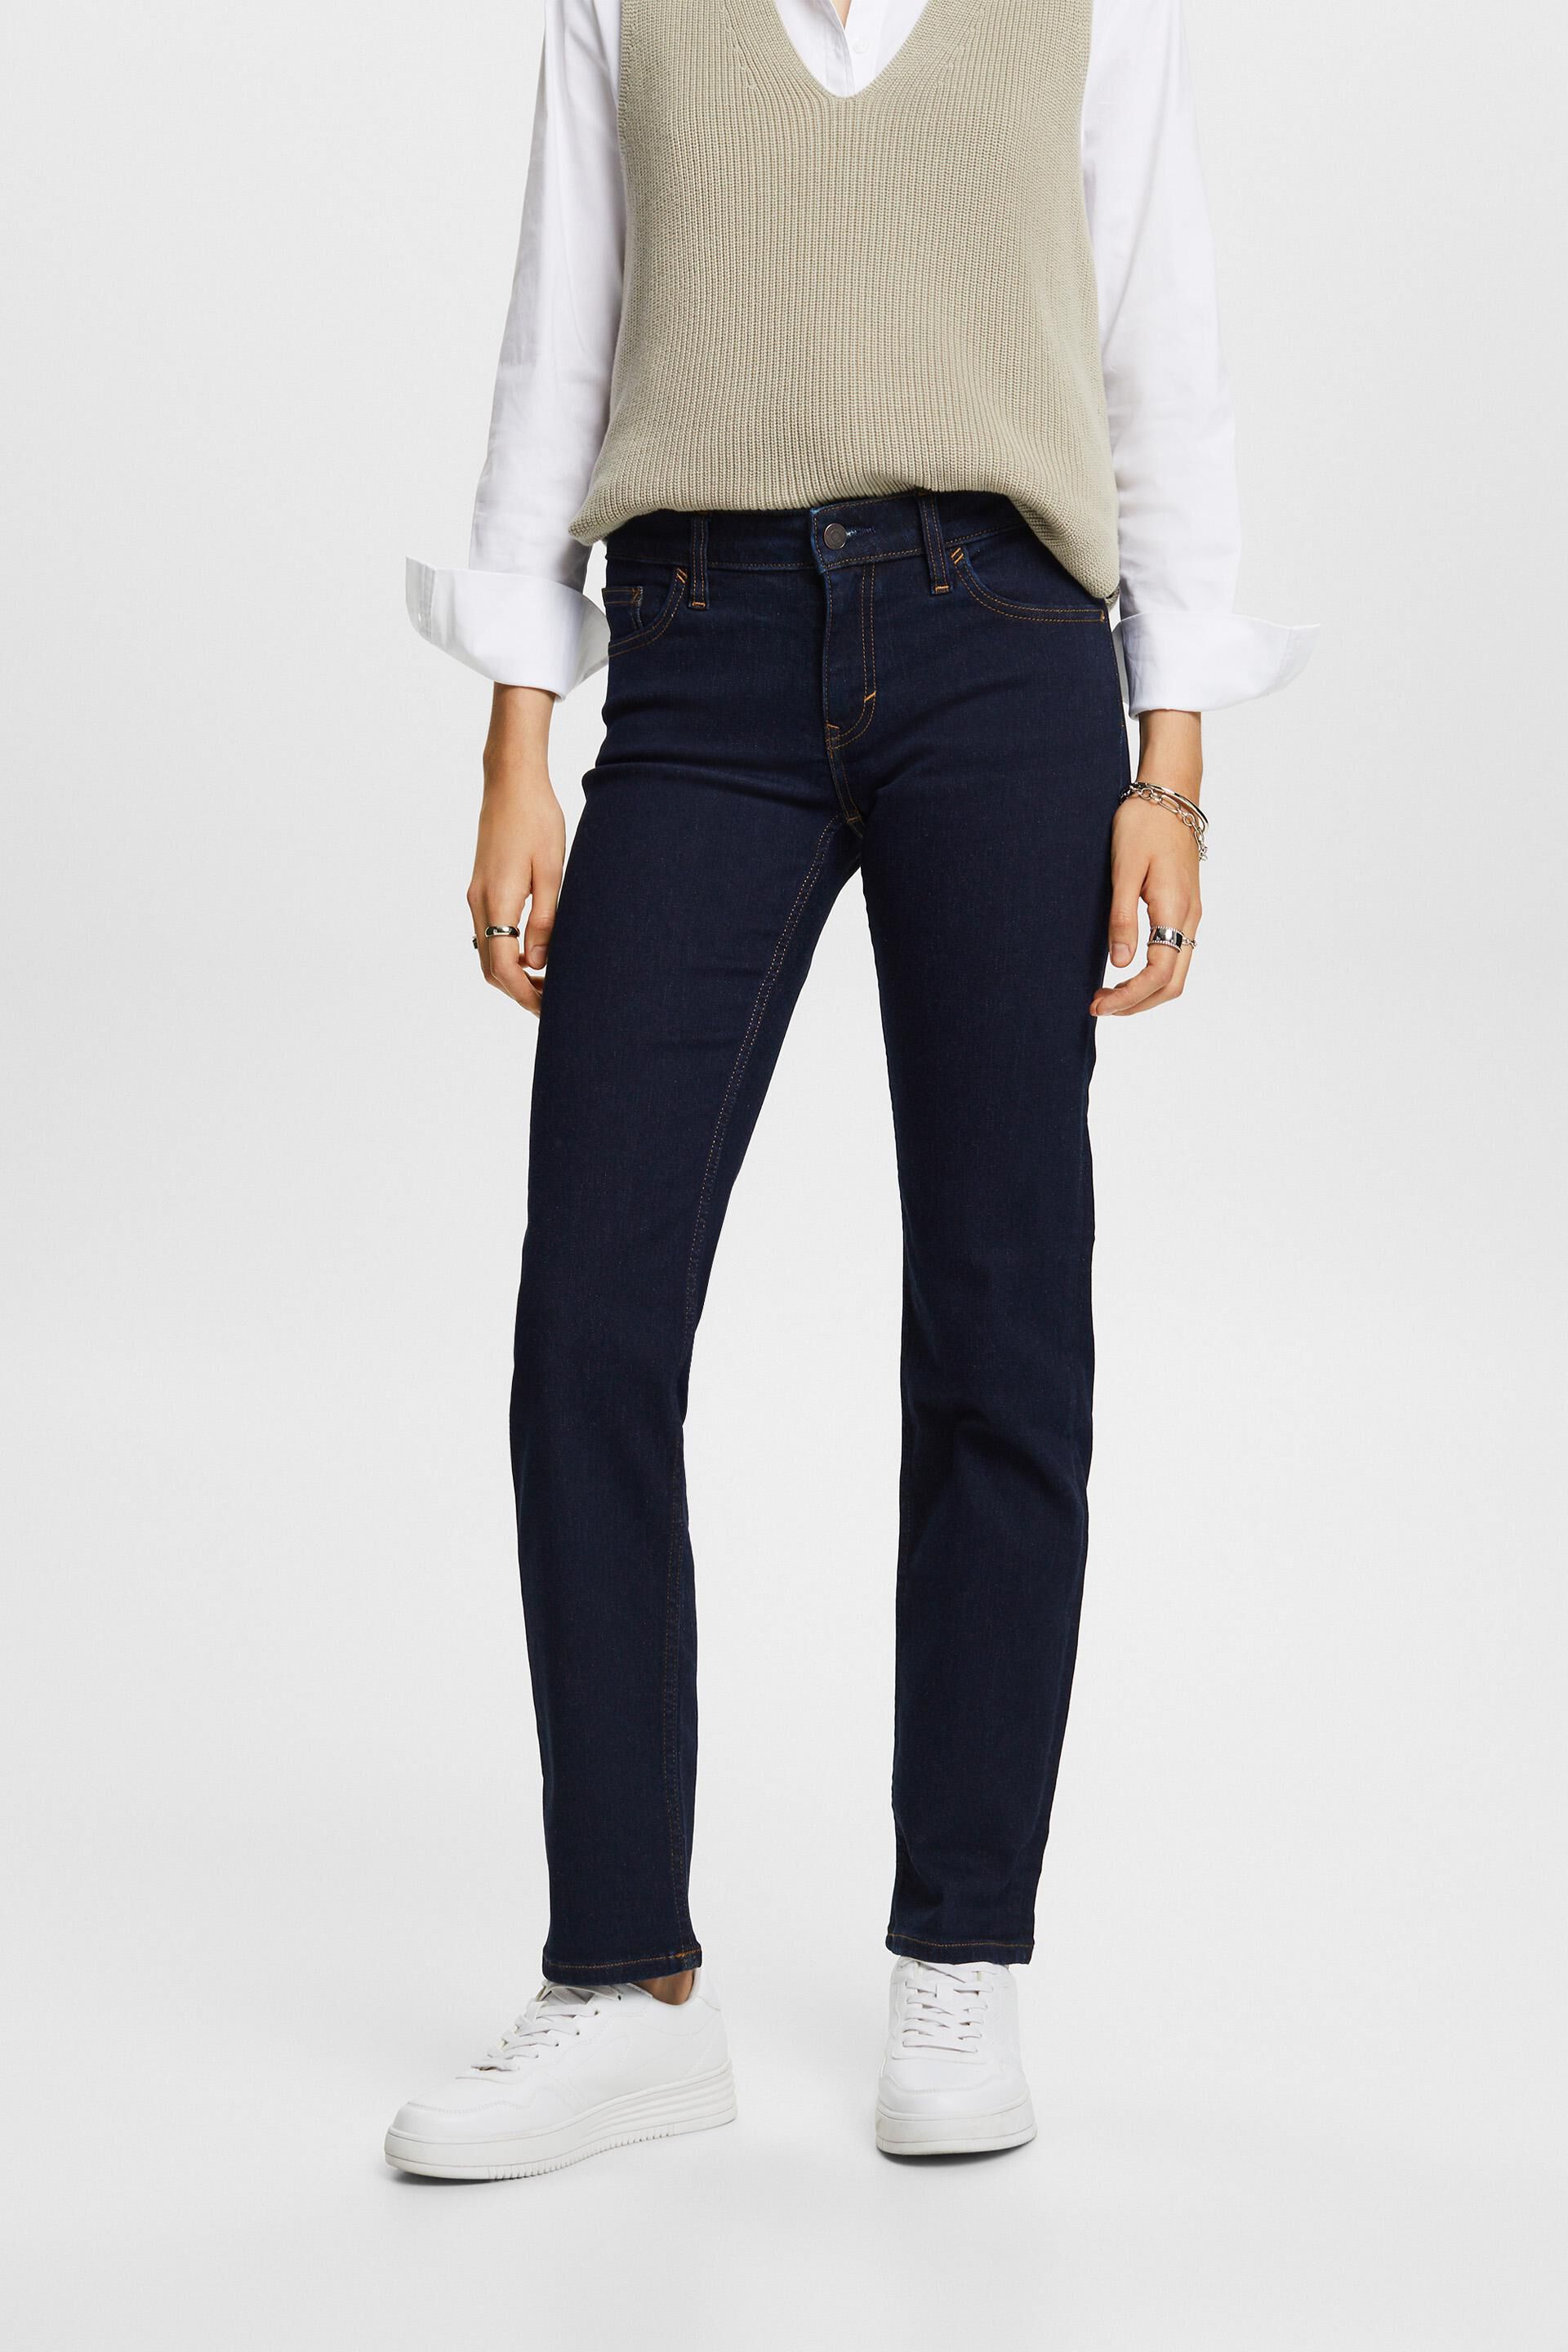 Esprit Damen Stretch-Jeans mit geradem Bein, Baumwollmischung